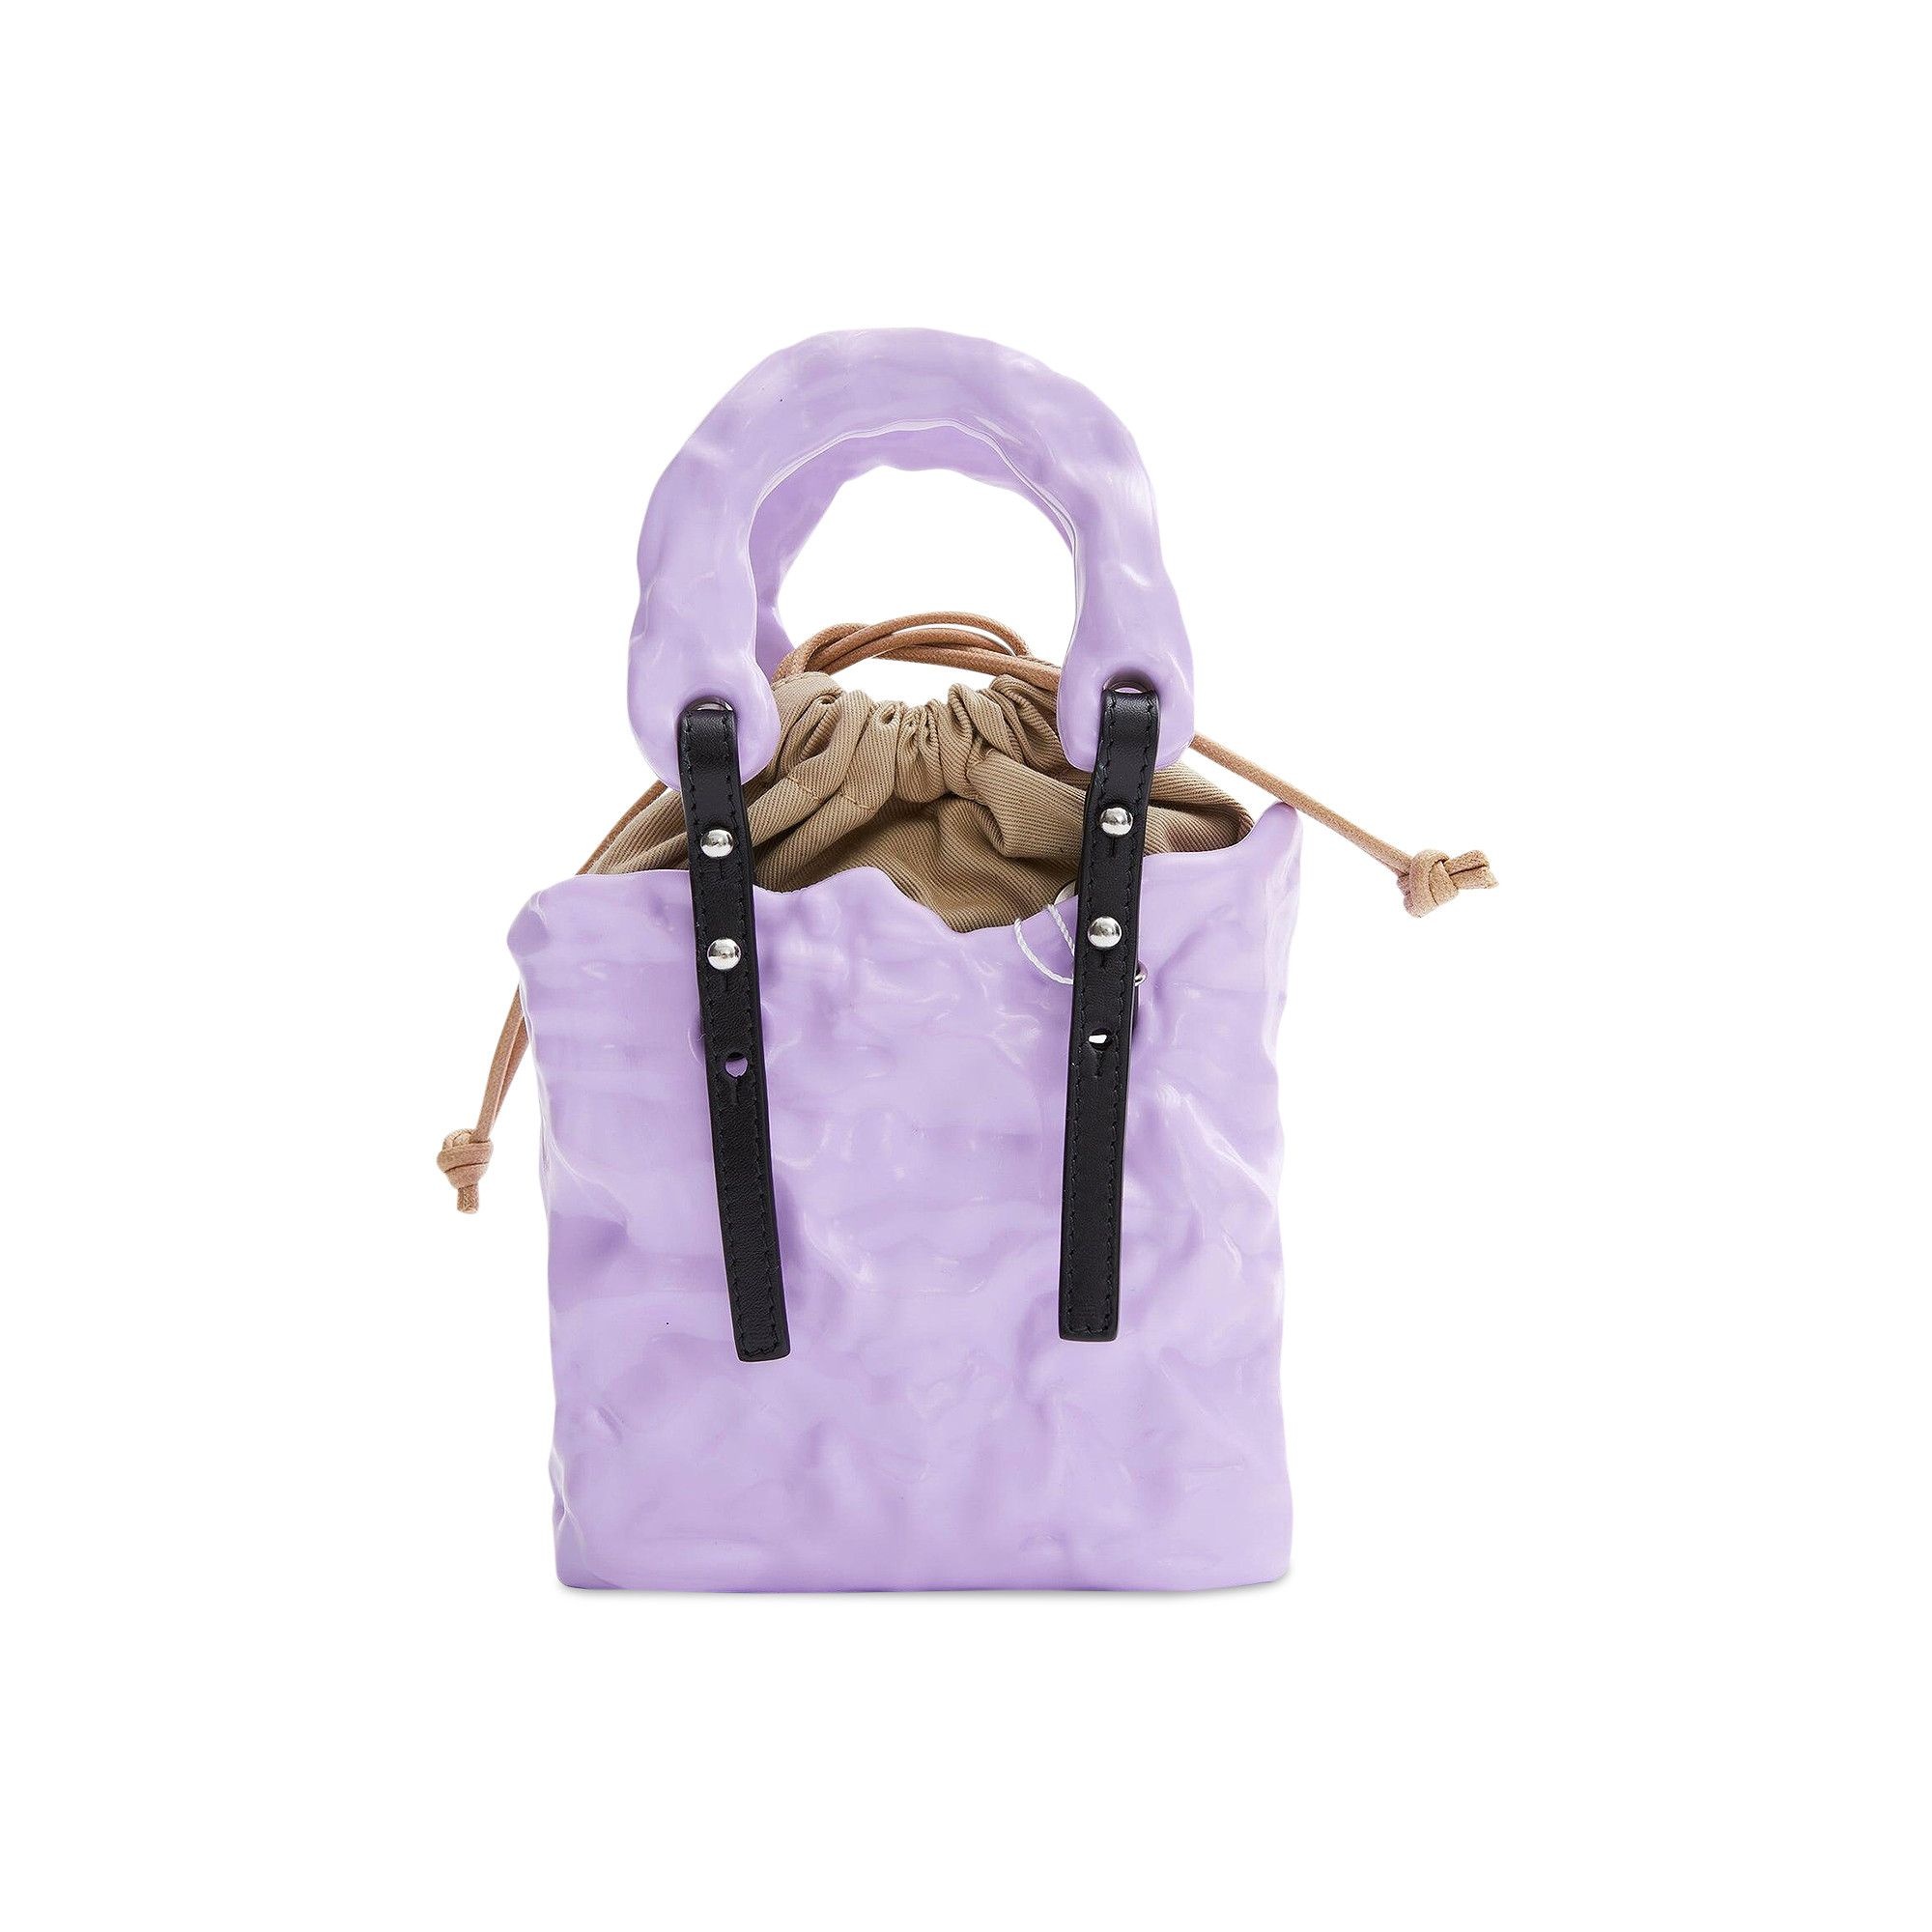 Ottolinger Signature Ceramic Bag 'Lilac' - 2